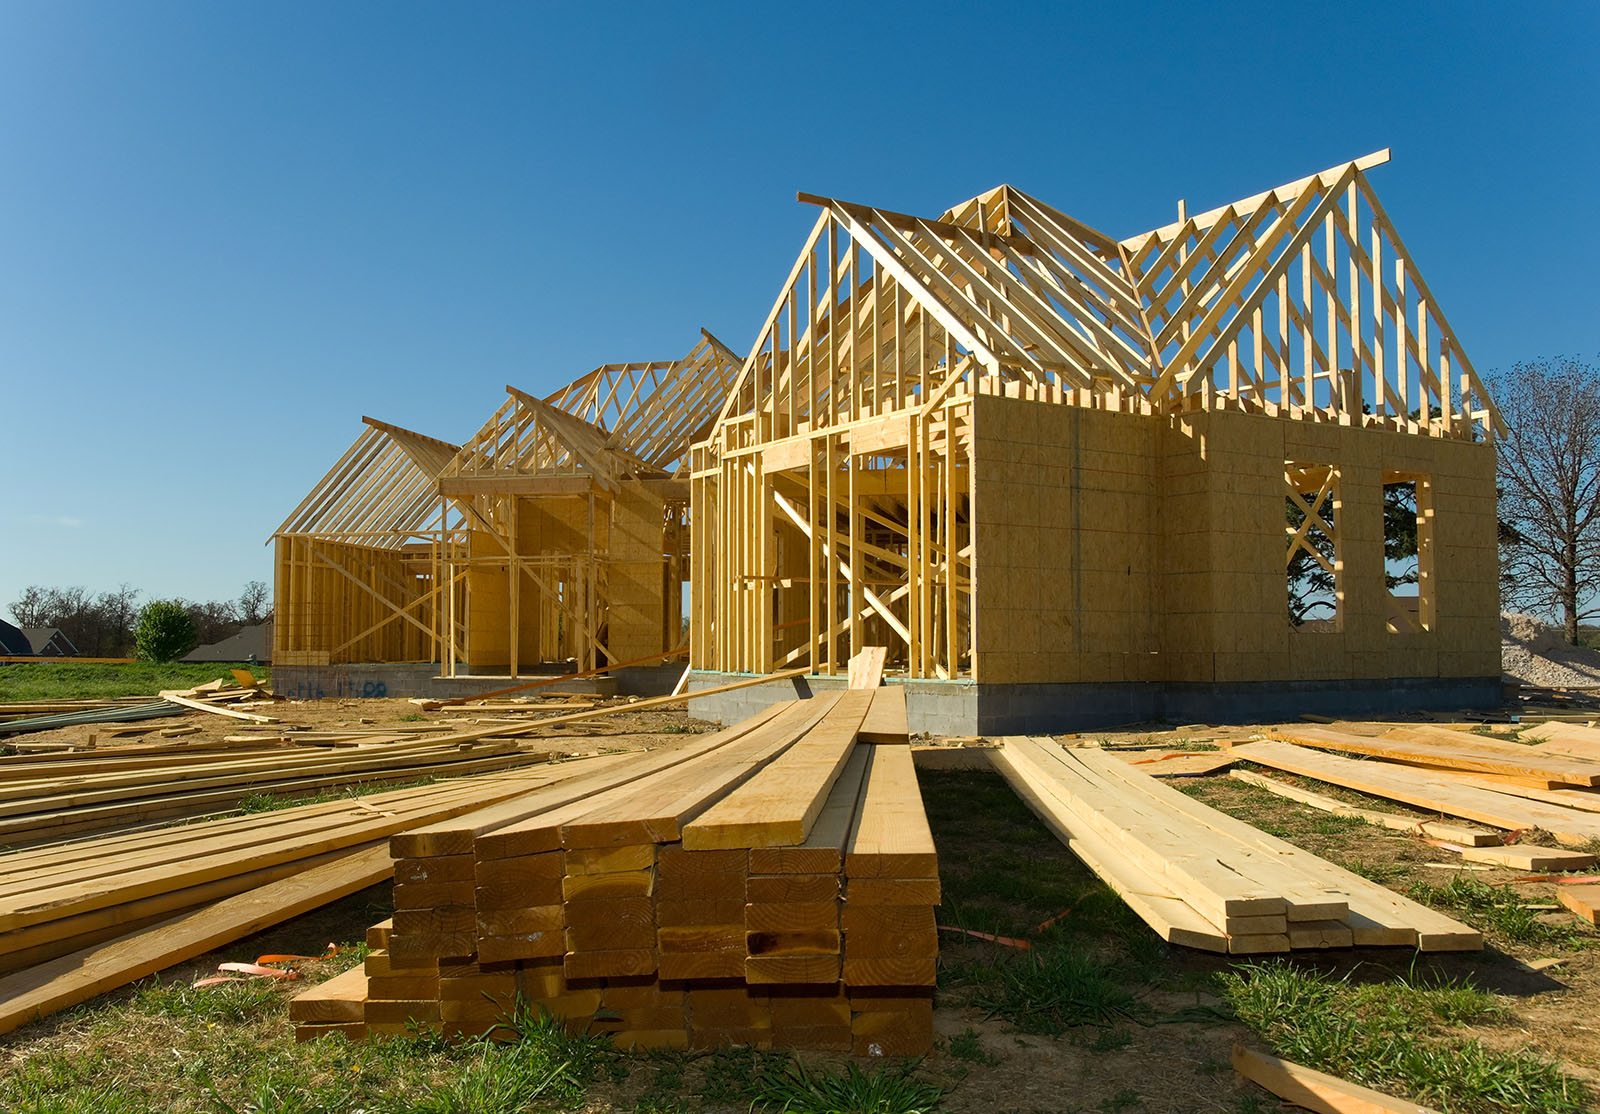 Maison neuve en construction avec bois, fermes et fournitures sur fond de ciel bleu